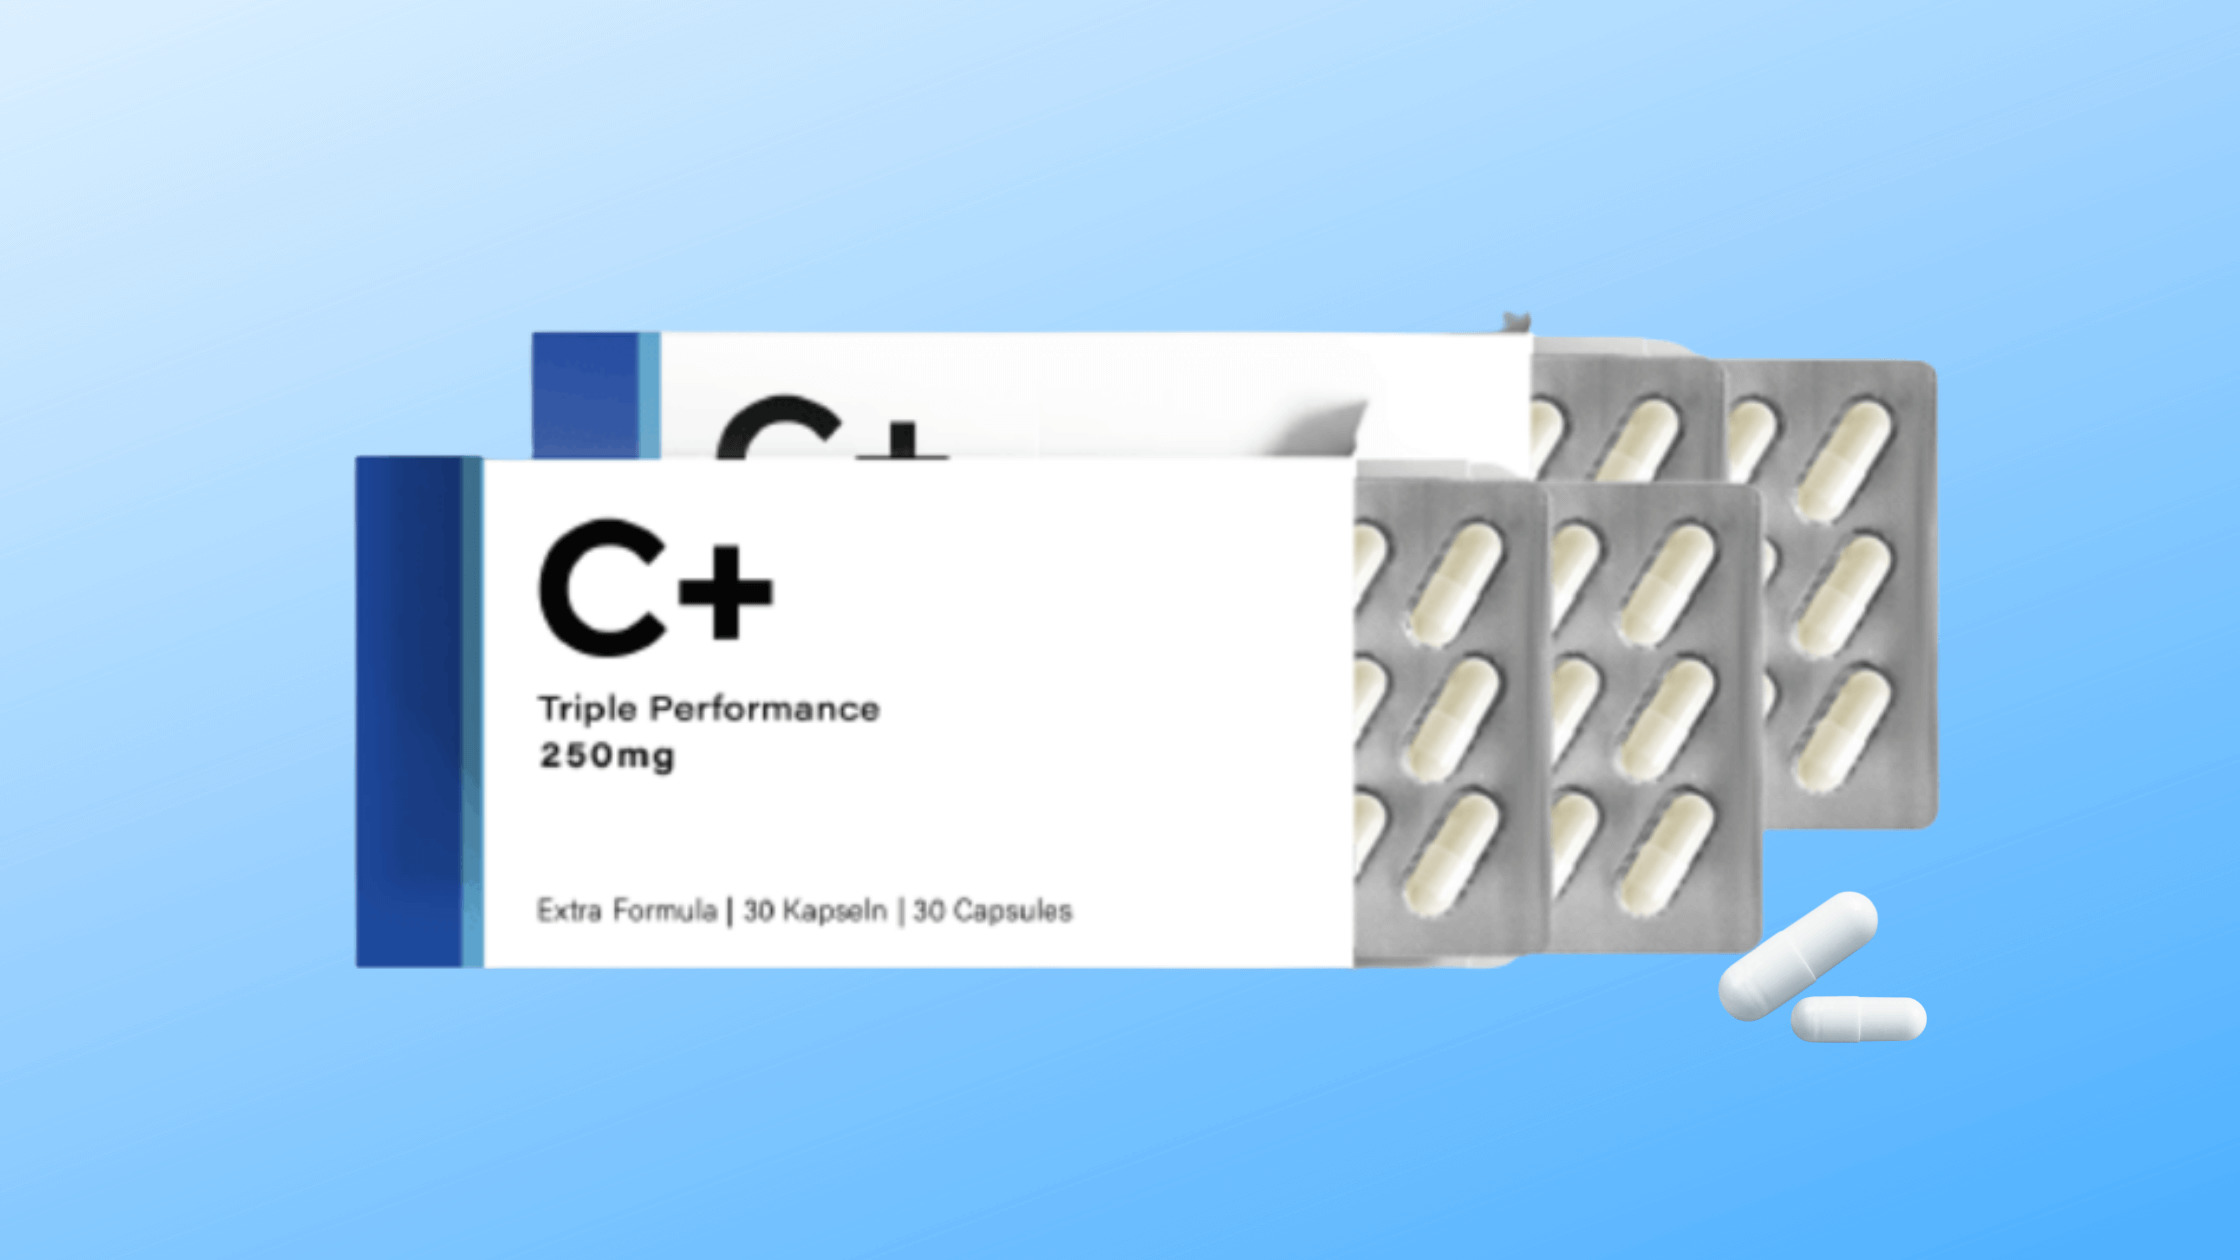 C+Testosterone Capsules